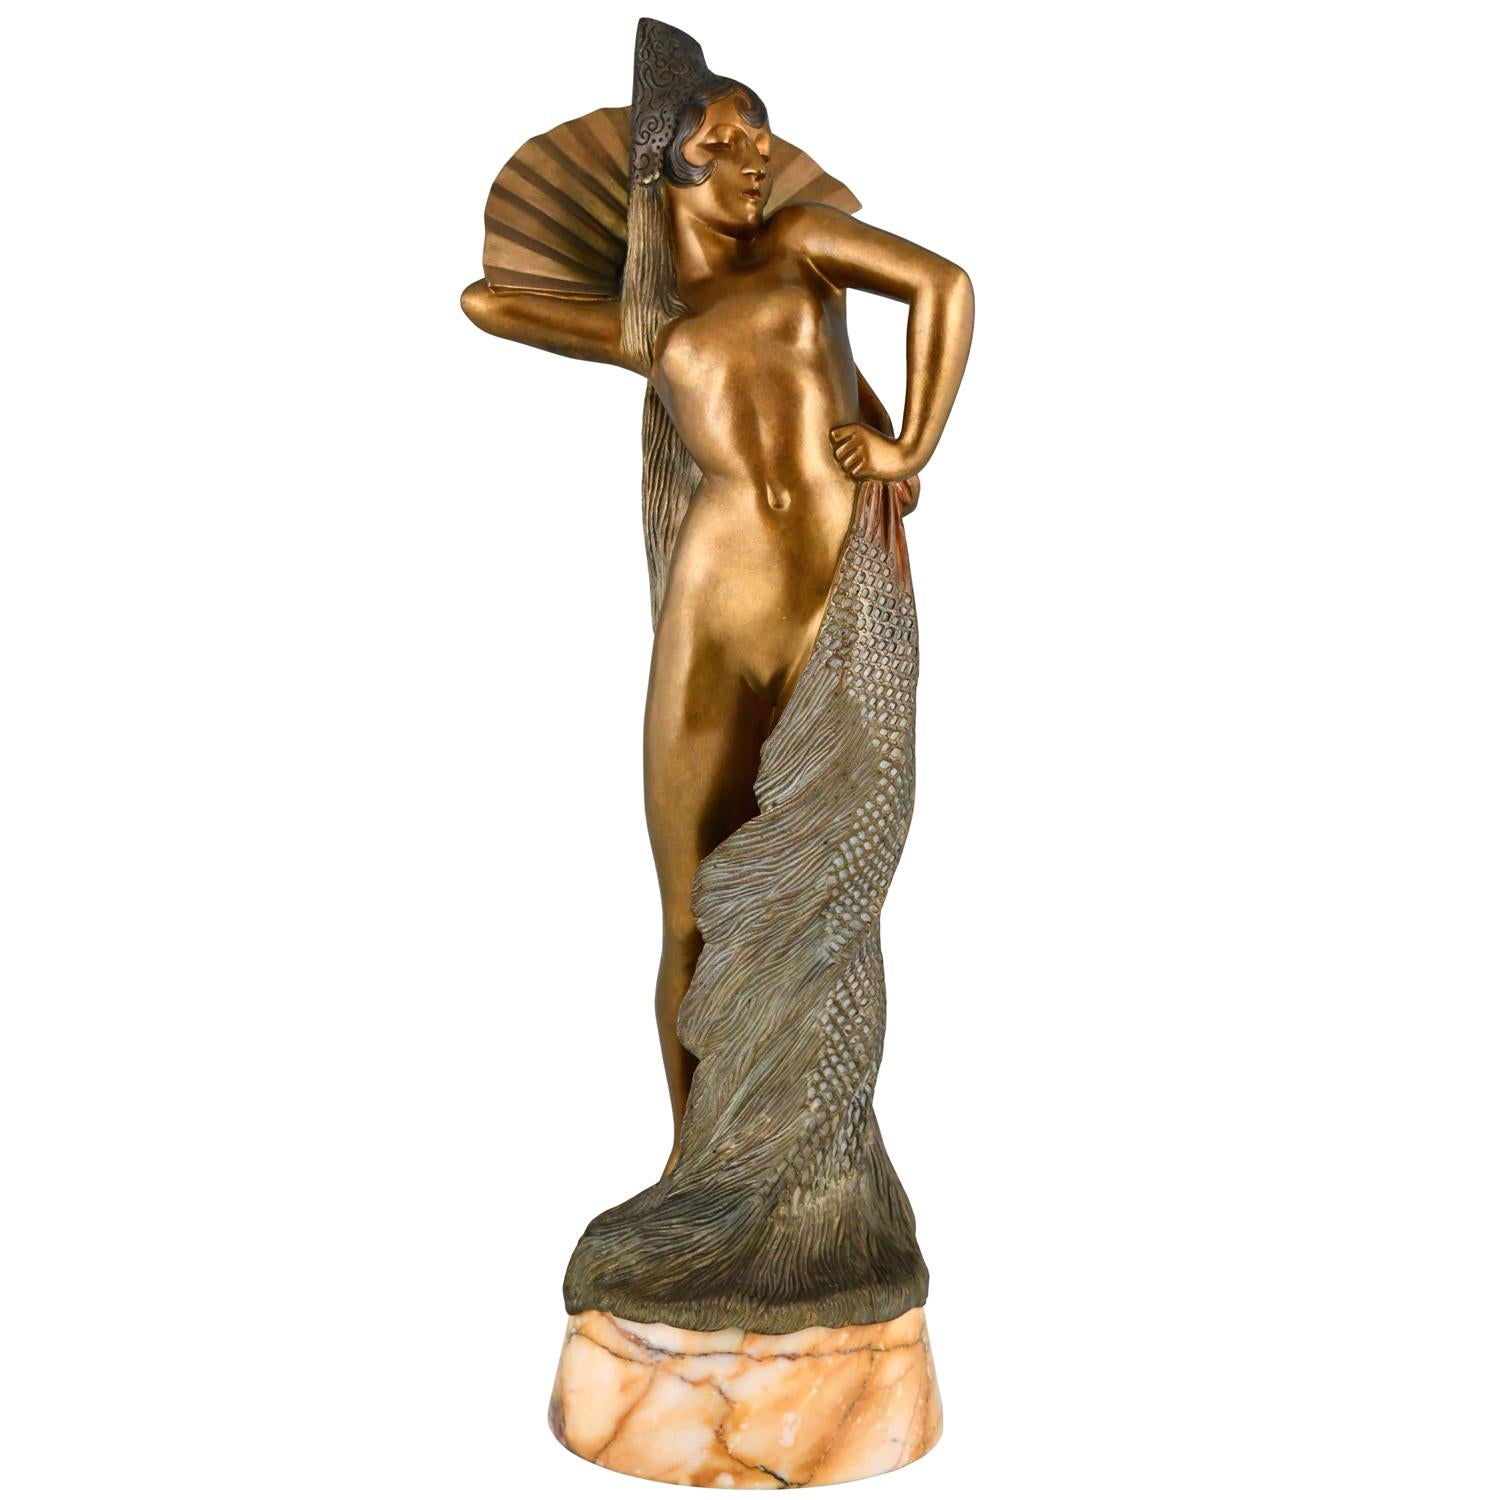 Art-Deco-Bronzeskulptur einer spanischen Tänzerin von Maurice Guiraud Rivière.
Die Skulptur ist in Bronze gegossen, hat eine schöne mehrfarbige Patina und steht auf einem Marmorsockel. 
Frankreich ca. 1925 